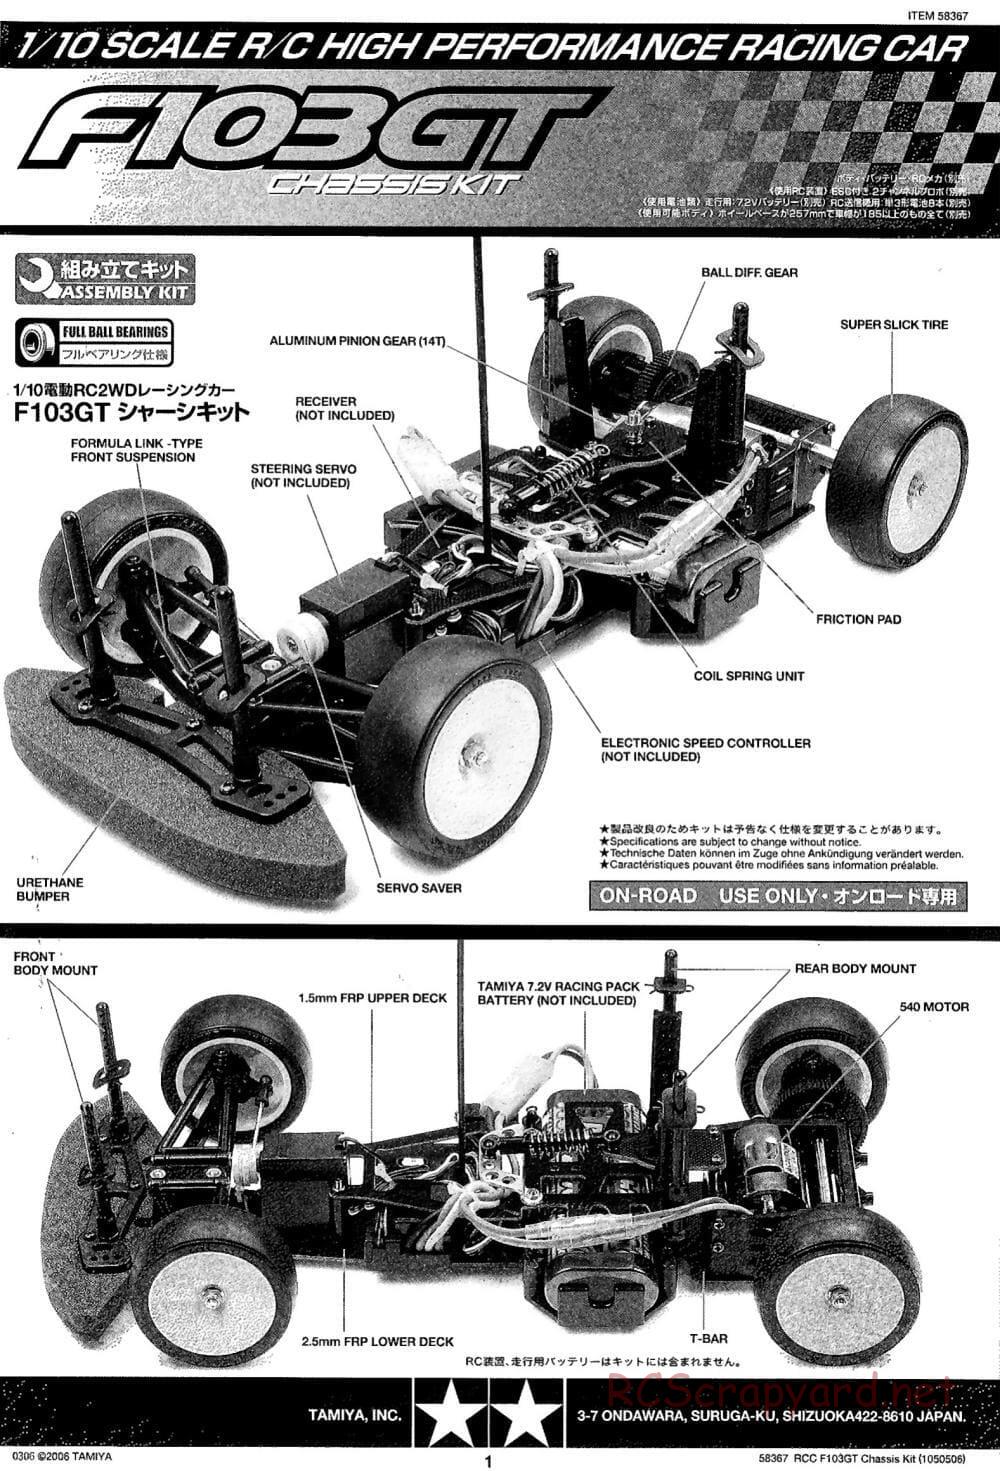 Tamiya - F103GT Chassis Kit - Manual - Page 1